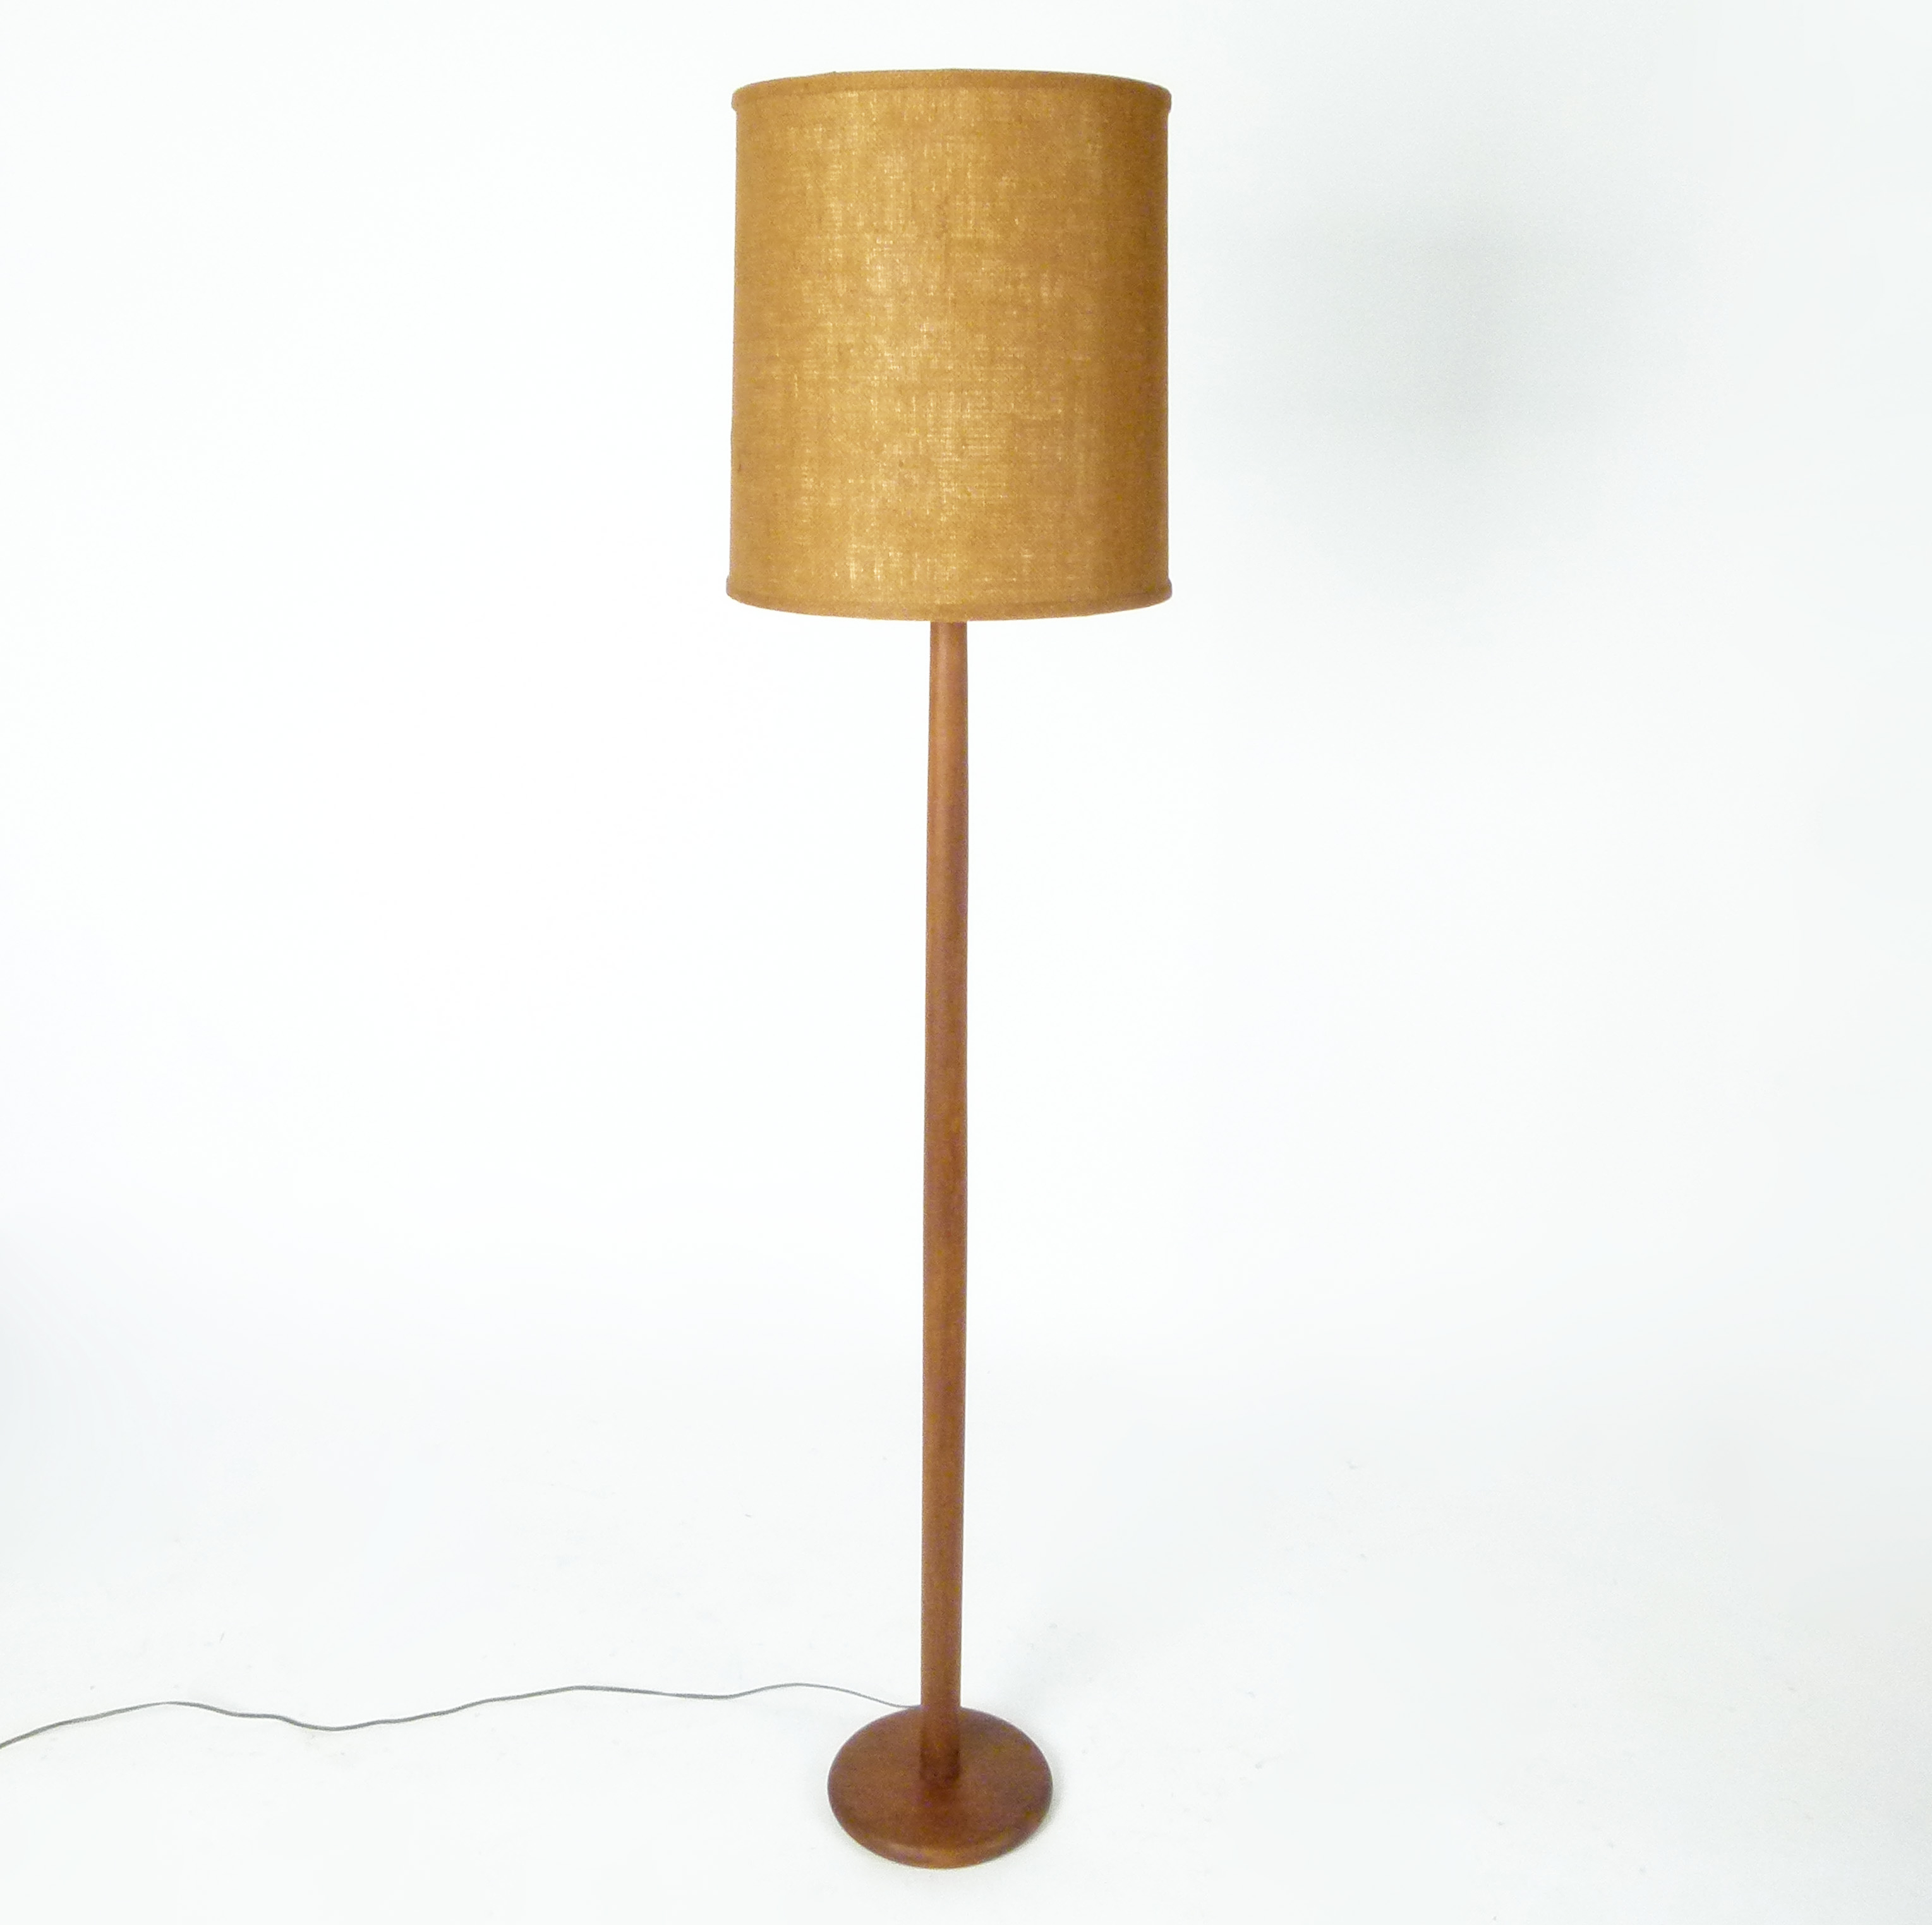 Teak Floor Lamp From Denmark inside sizing 3058 X 3047